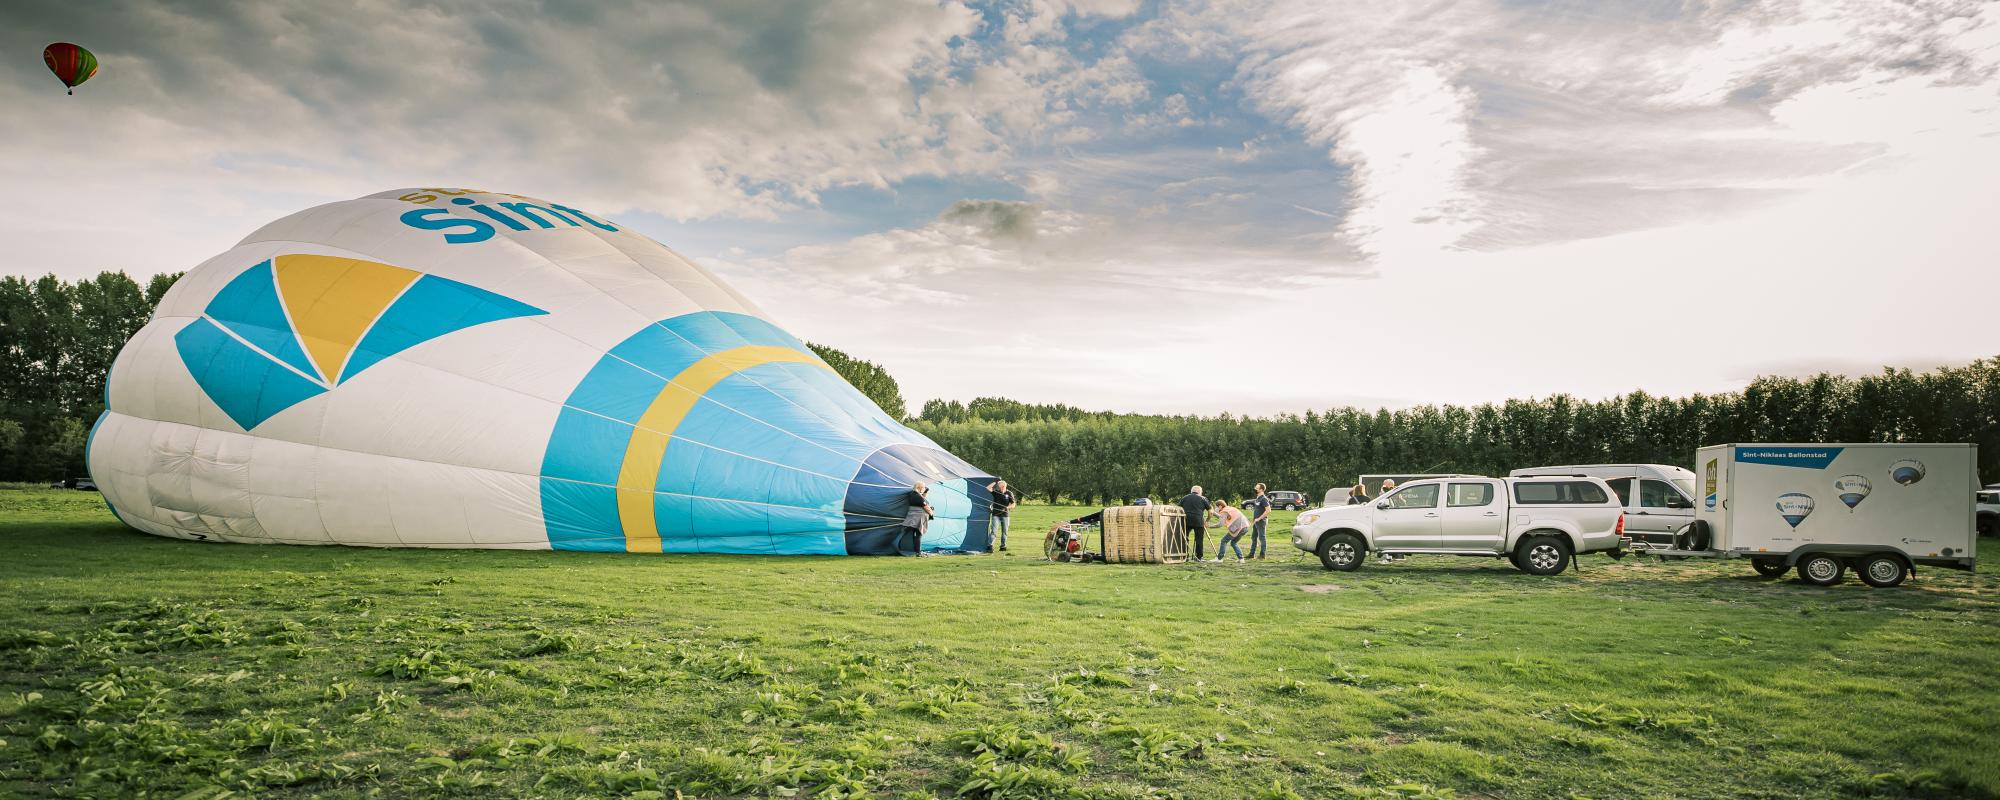 De ballon van stad Sint-Niklaas wordt opgeblazen op het veld